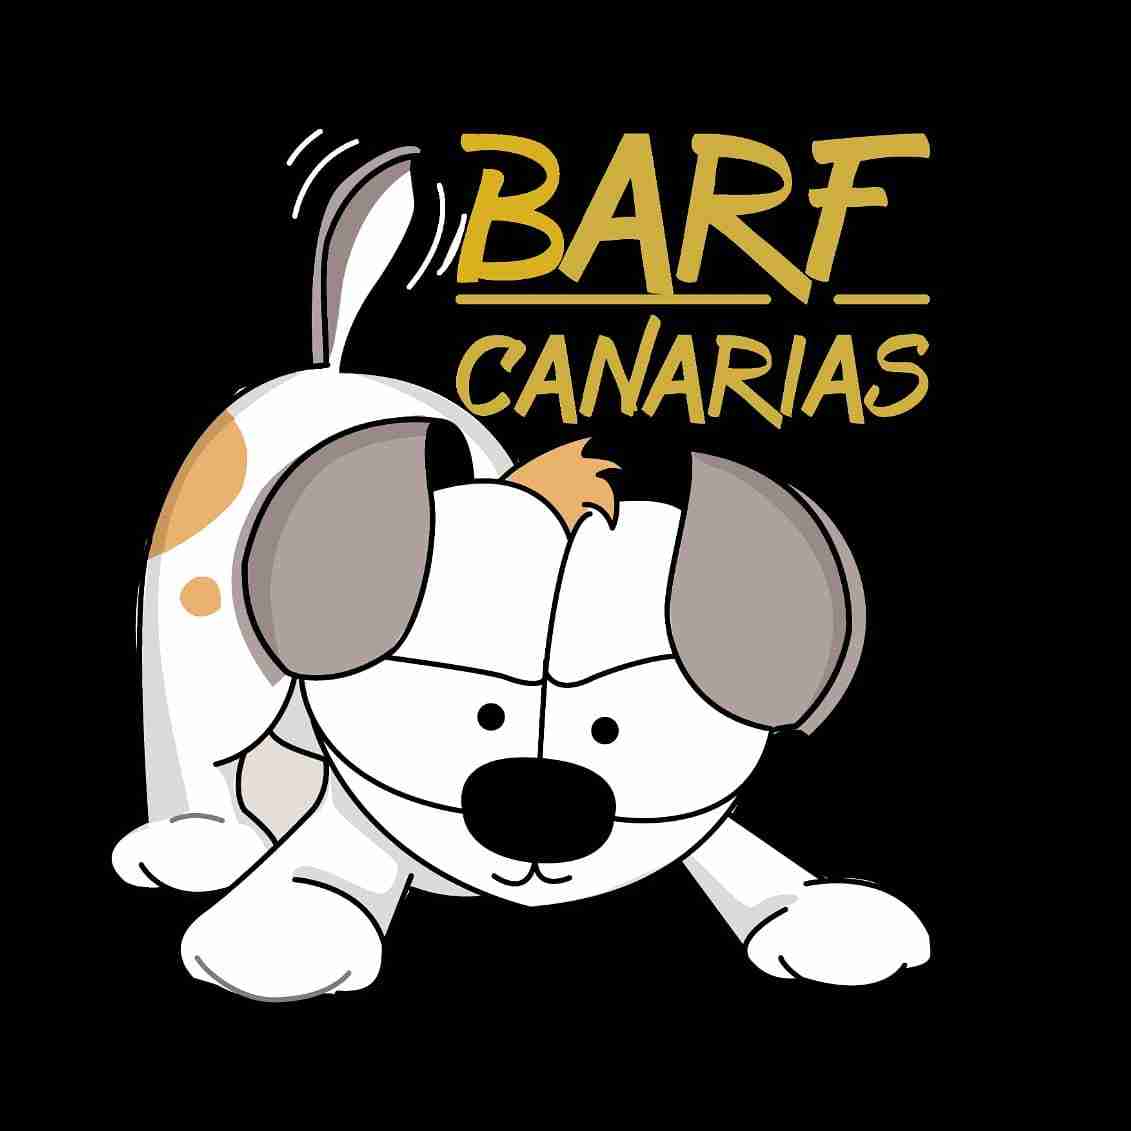 Barf Canarias